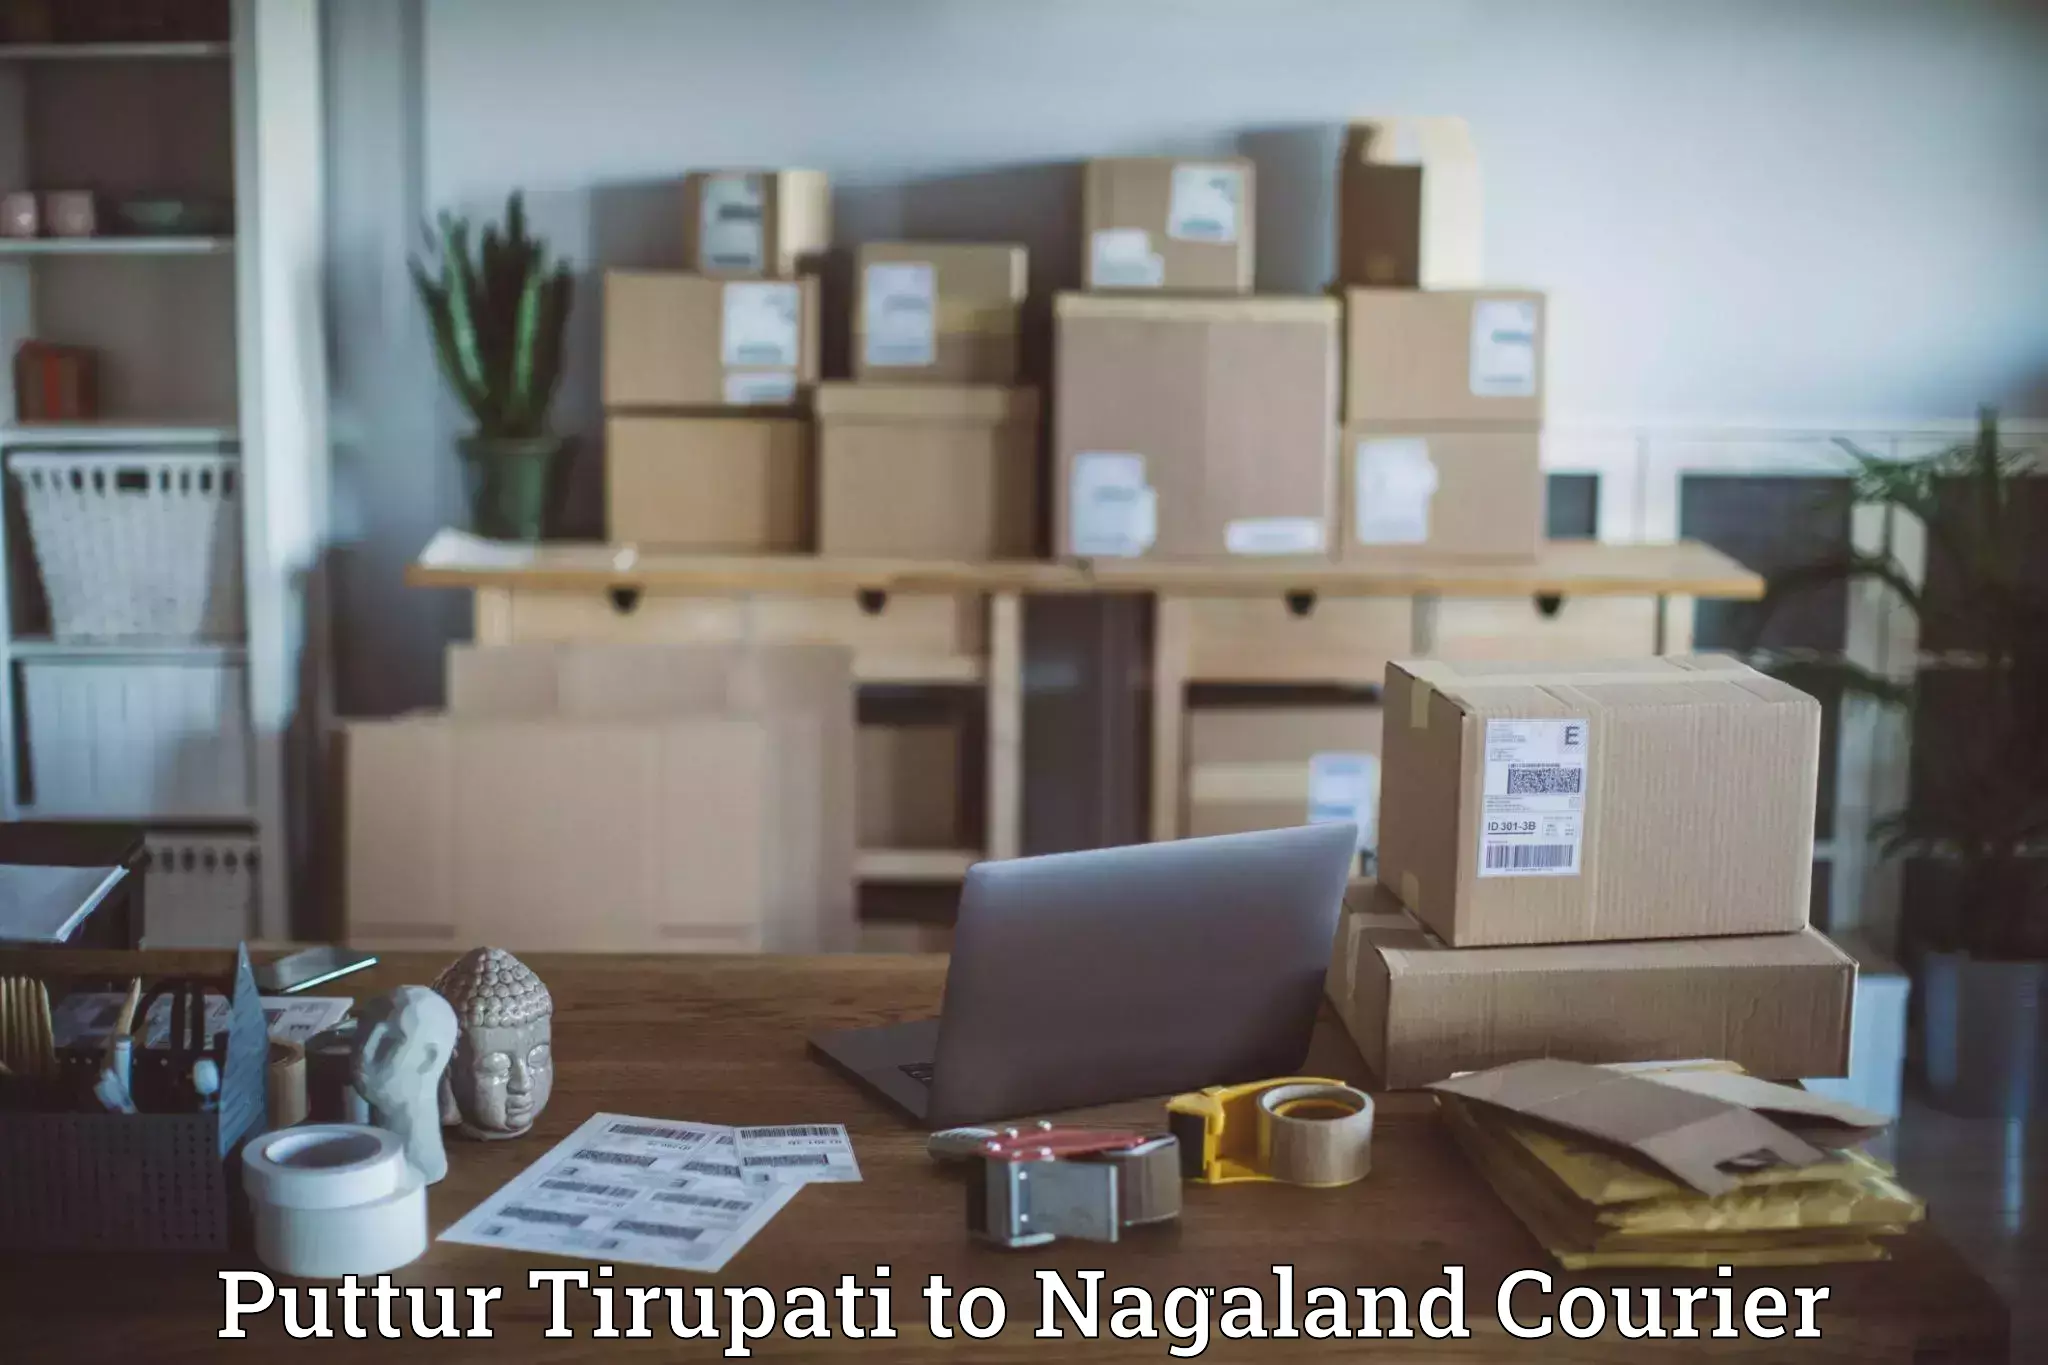 Professional parcel services Puttur Tirupati to Wokha